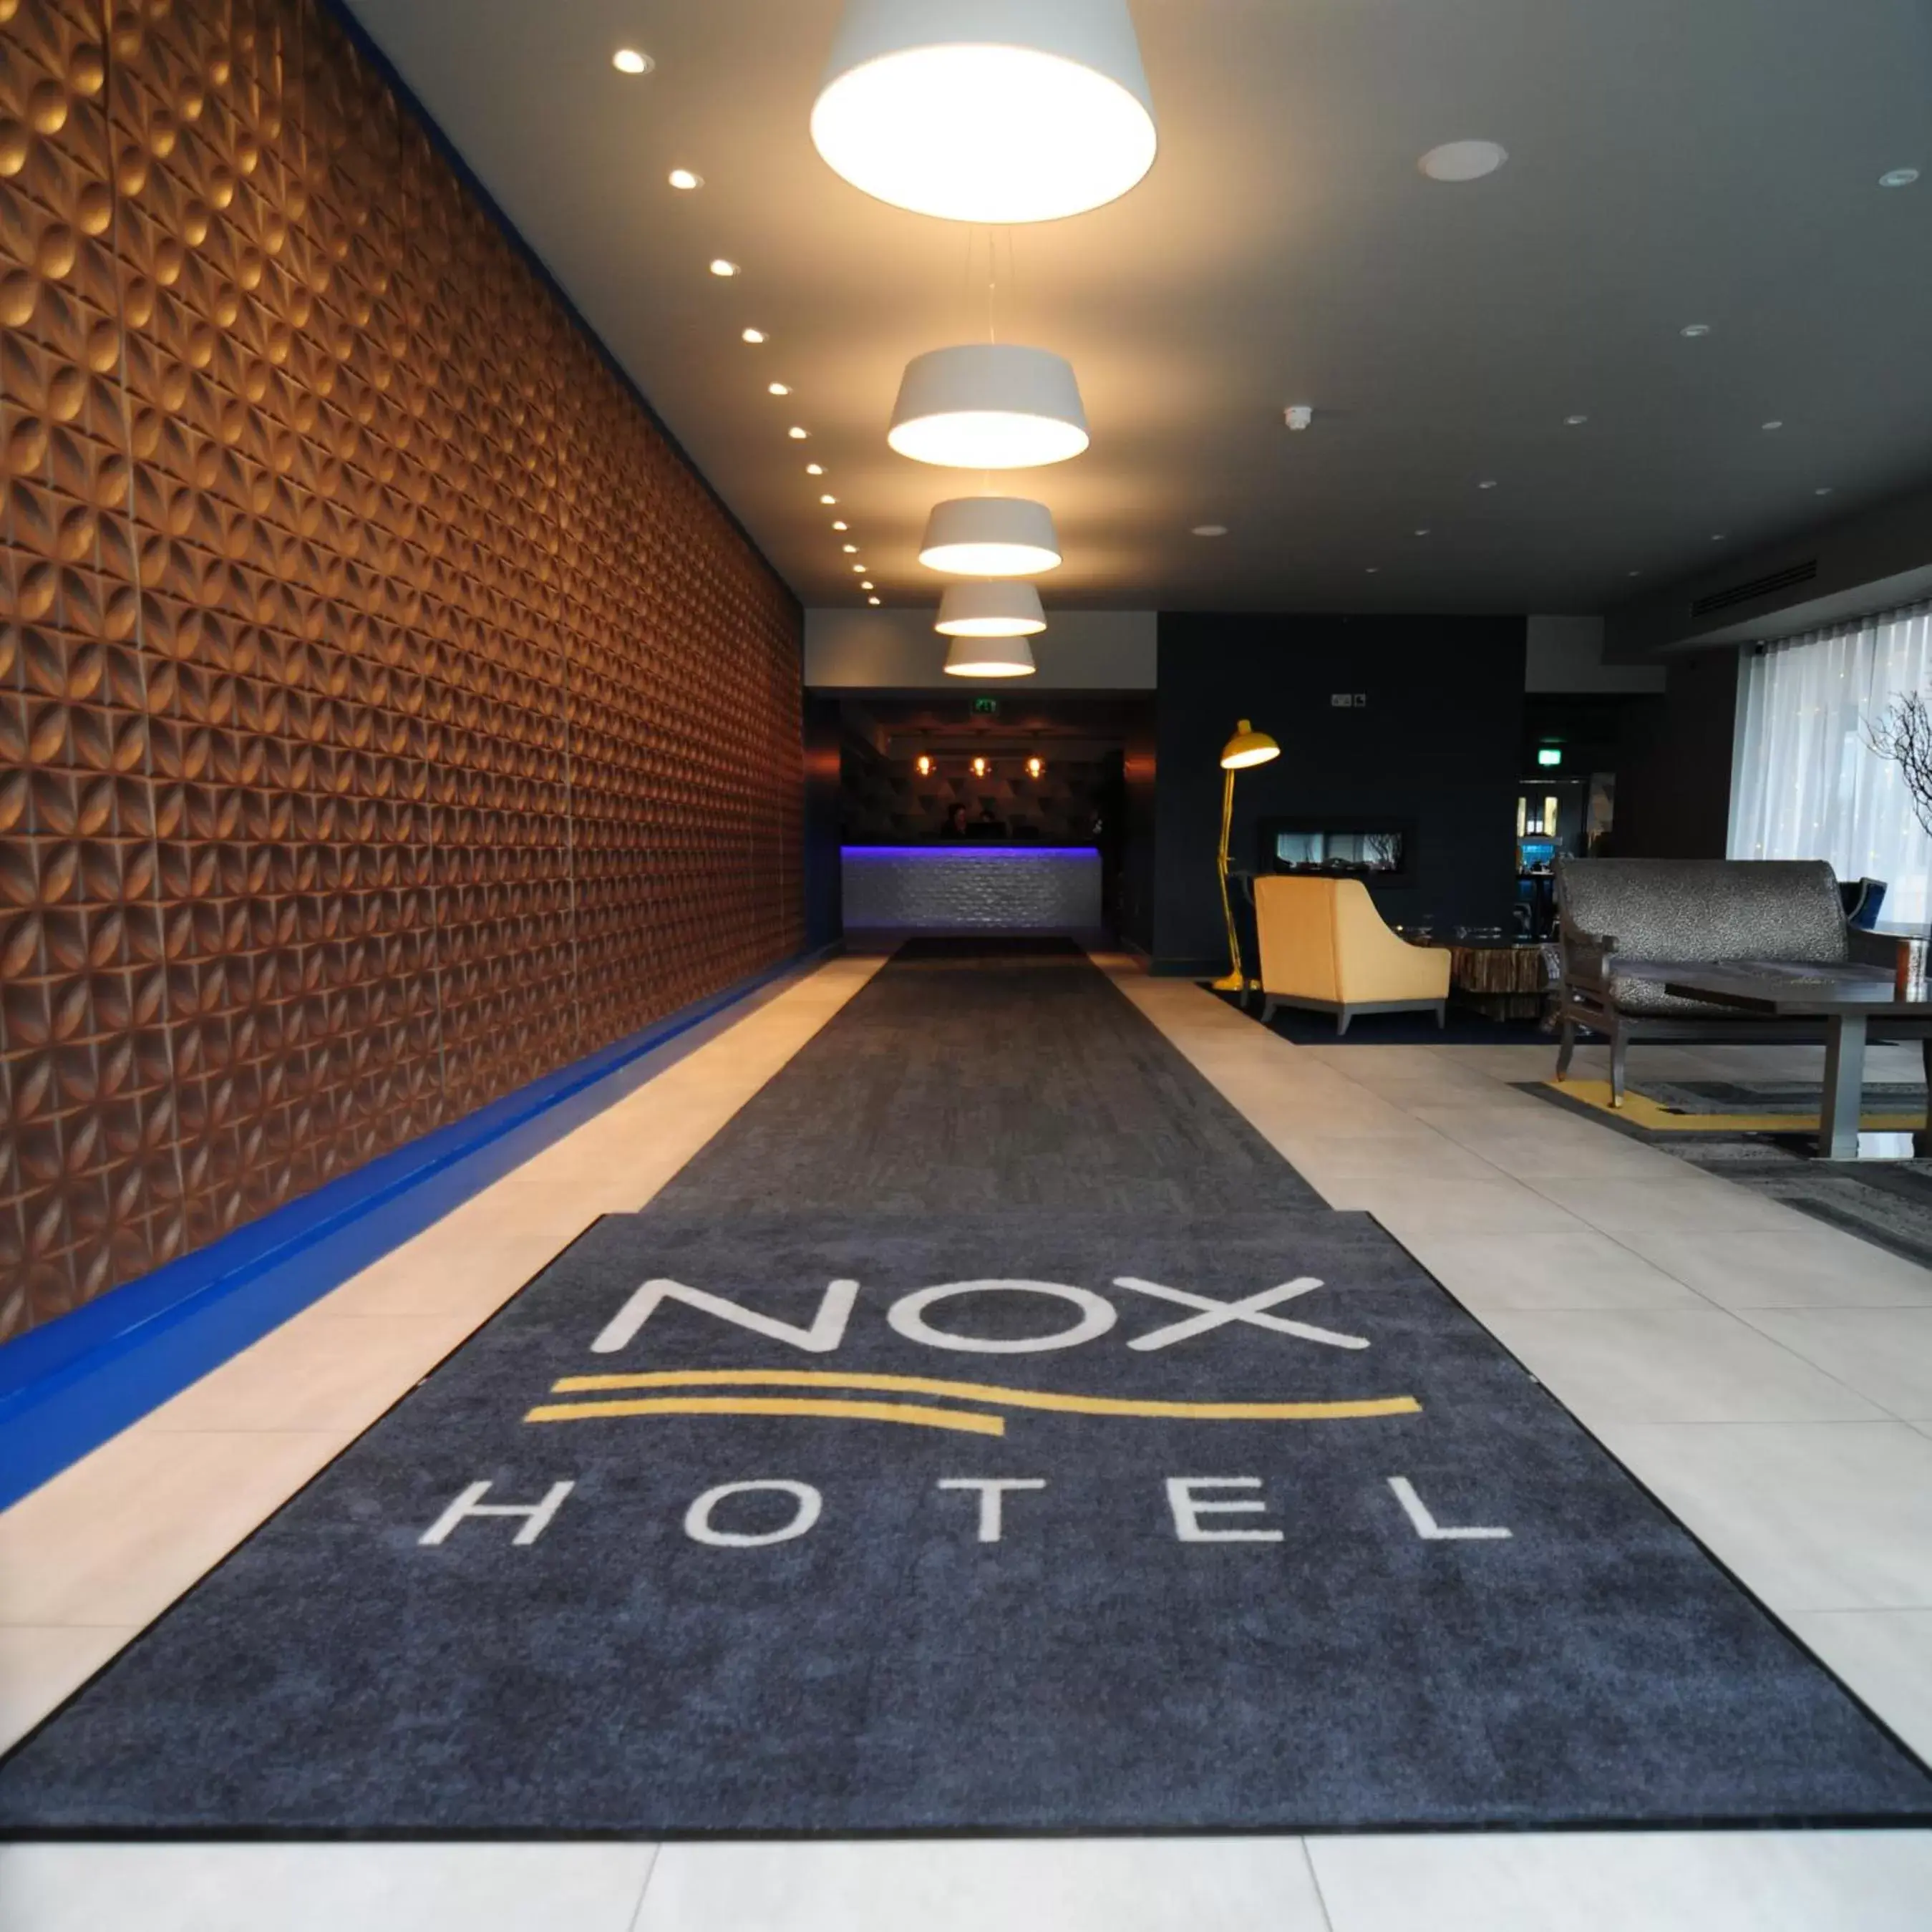 Lobby or reception, Lobby/Reception in Nox Hotel Galway